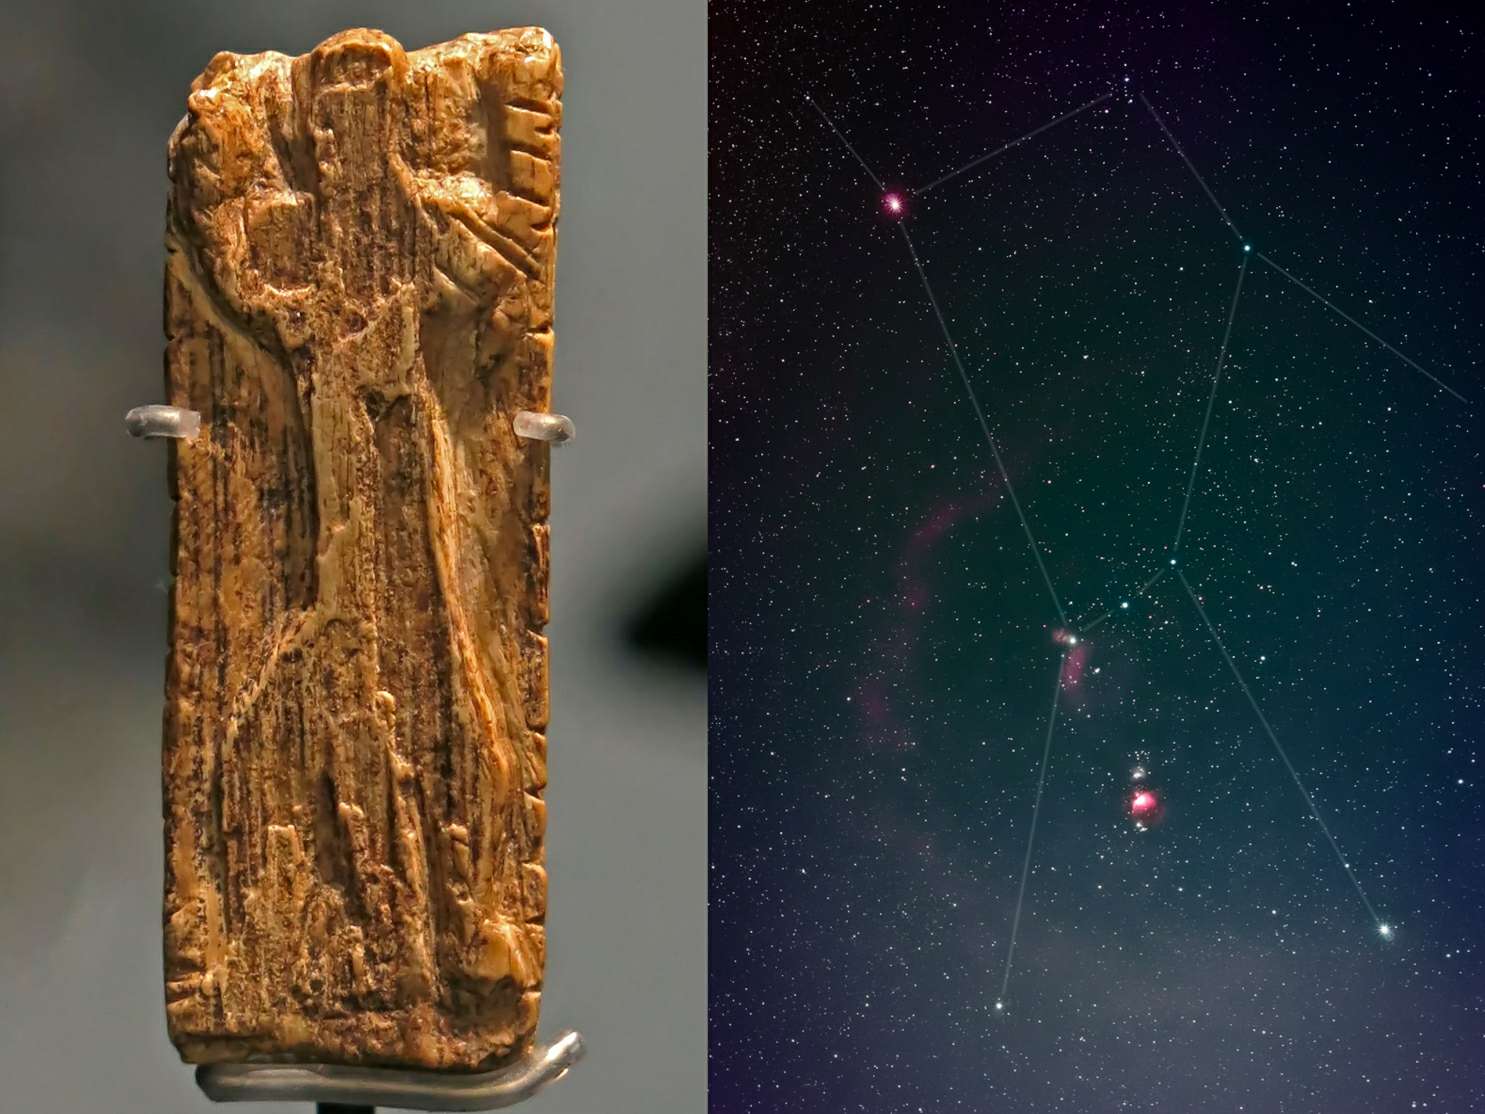 最古老的星星圖案圖像，即著名的獵戶座星座，已經在一塊大約 32,500 年前的象牙板上得到了識別。 猛獁象牙的細長條上雕刻著一個人形，手臂和腿張開，姿勢與獵戶座的星星相同。